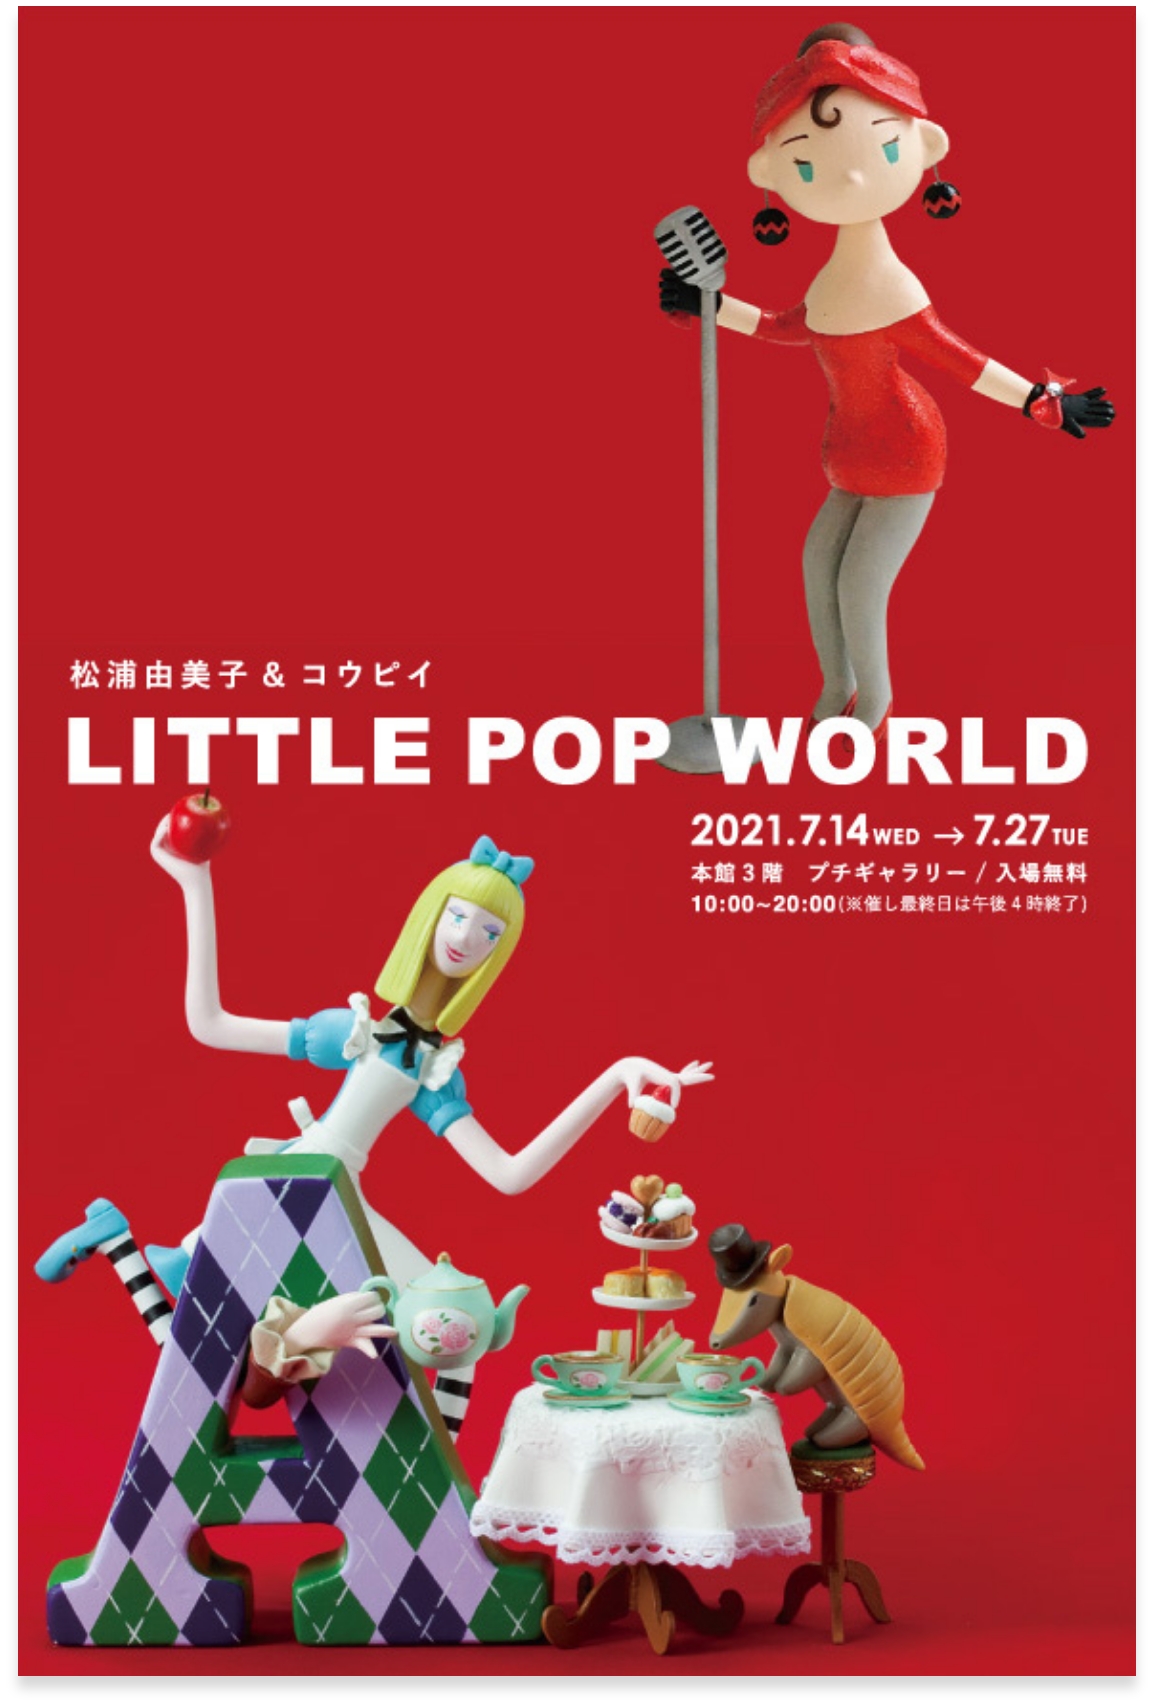 神戸阪急での松浦由美子とコウピイの2人展「LITTLE POP WORLD」のポスター